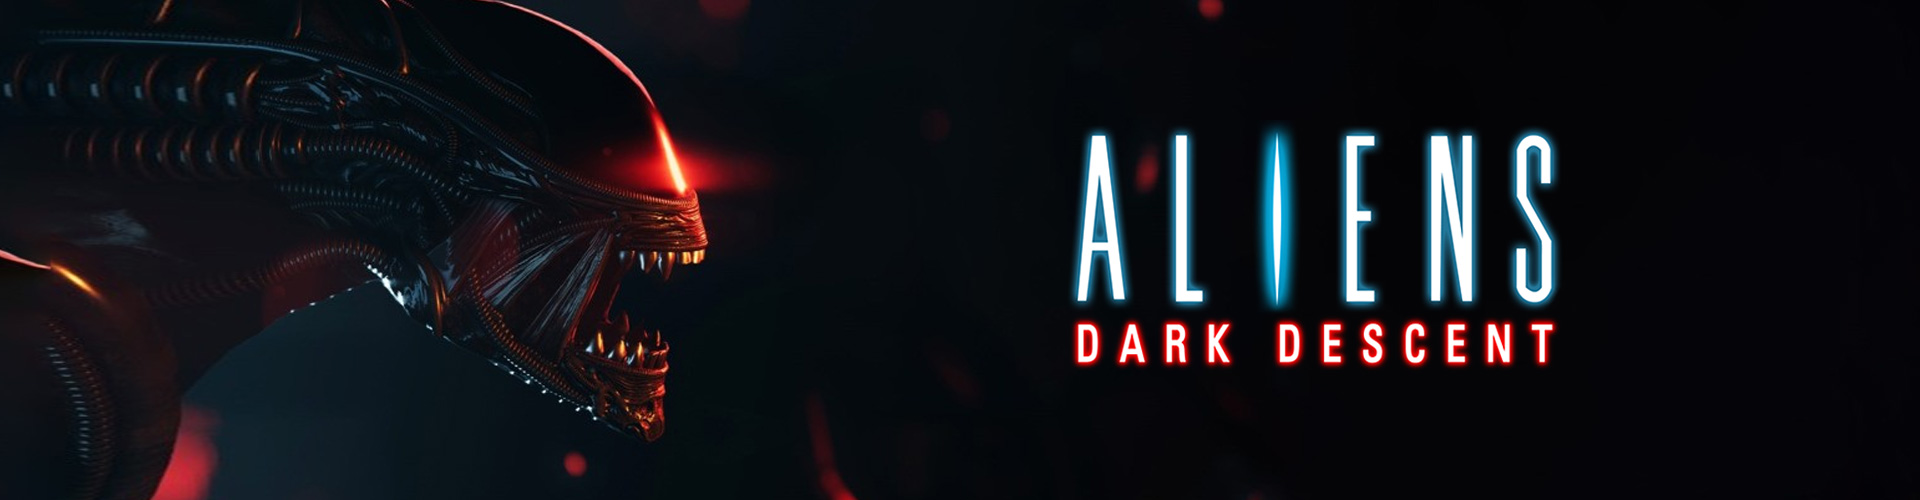 Aliens: Dark Descent Ã© um jogo de terror e estratÃ©gia